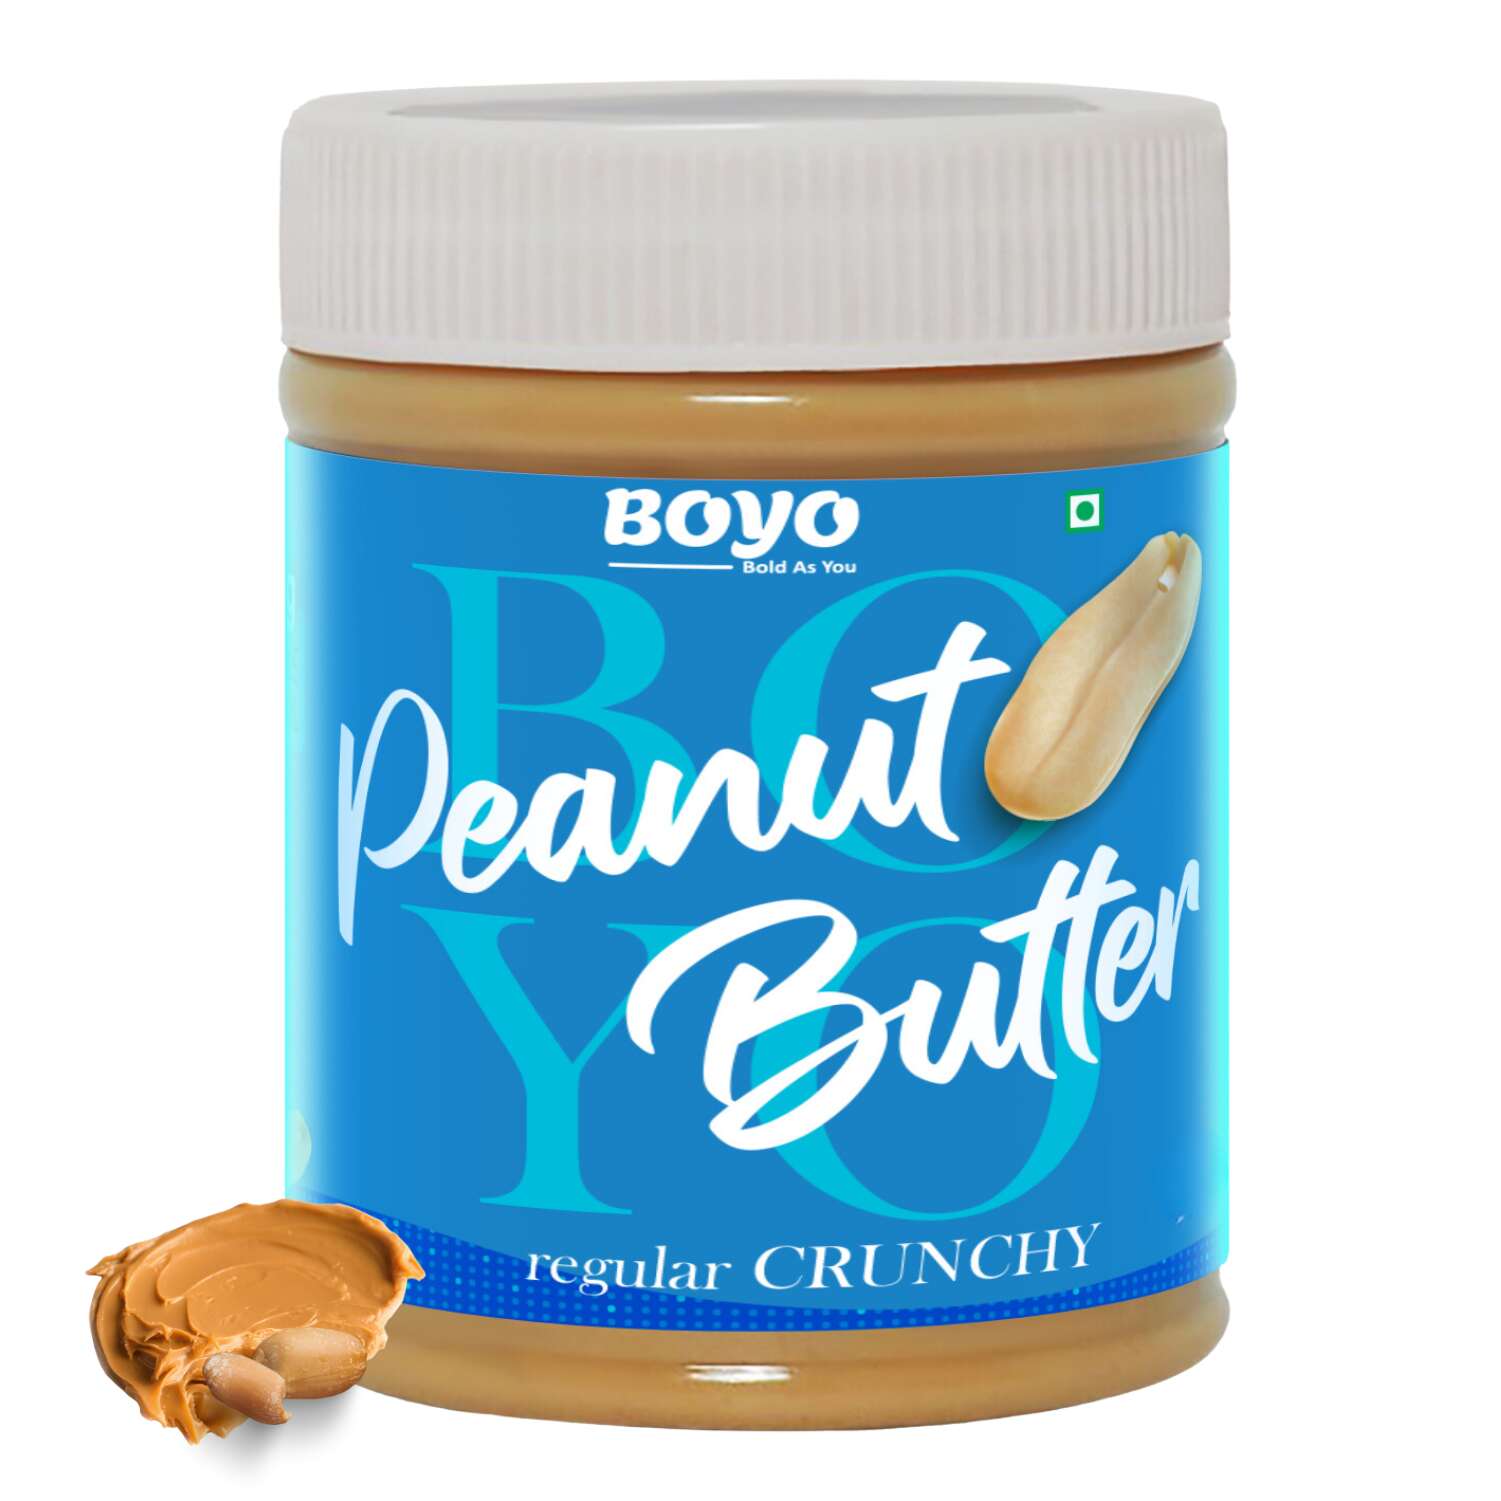 Peanut Butter Regular Crunchy flavor - 340gm